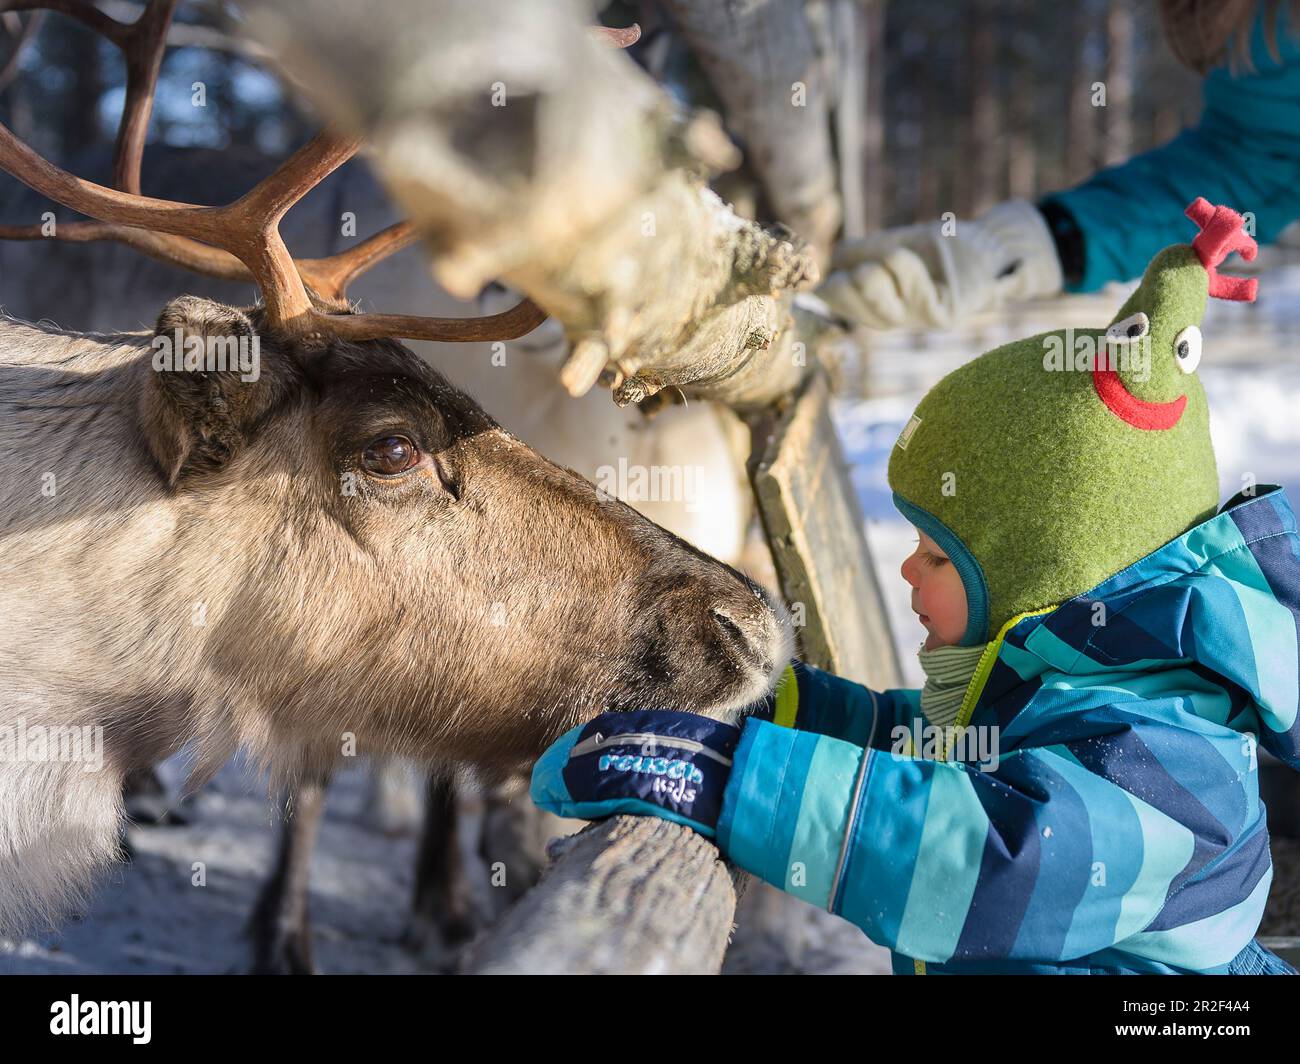 Feeding toddler at reindeer, Pyhä-Luosto, Finnish Lapland Stock Photo